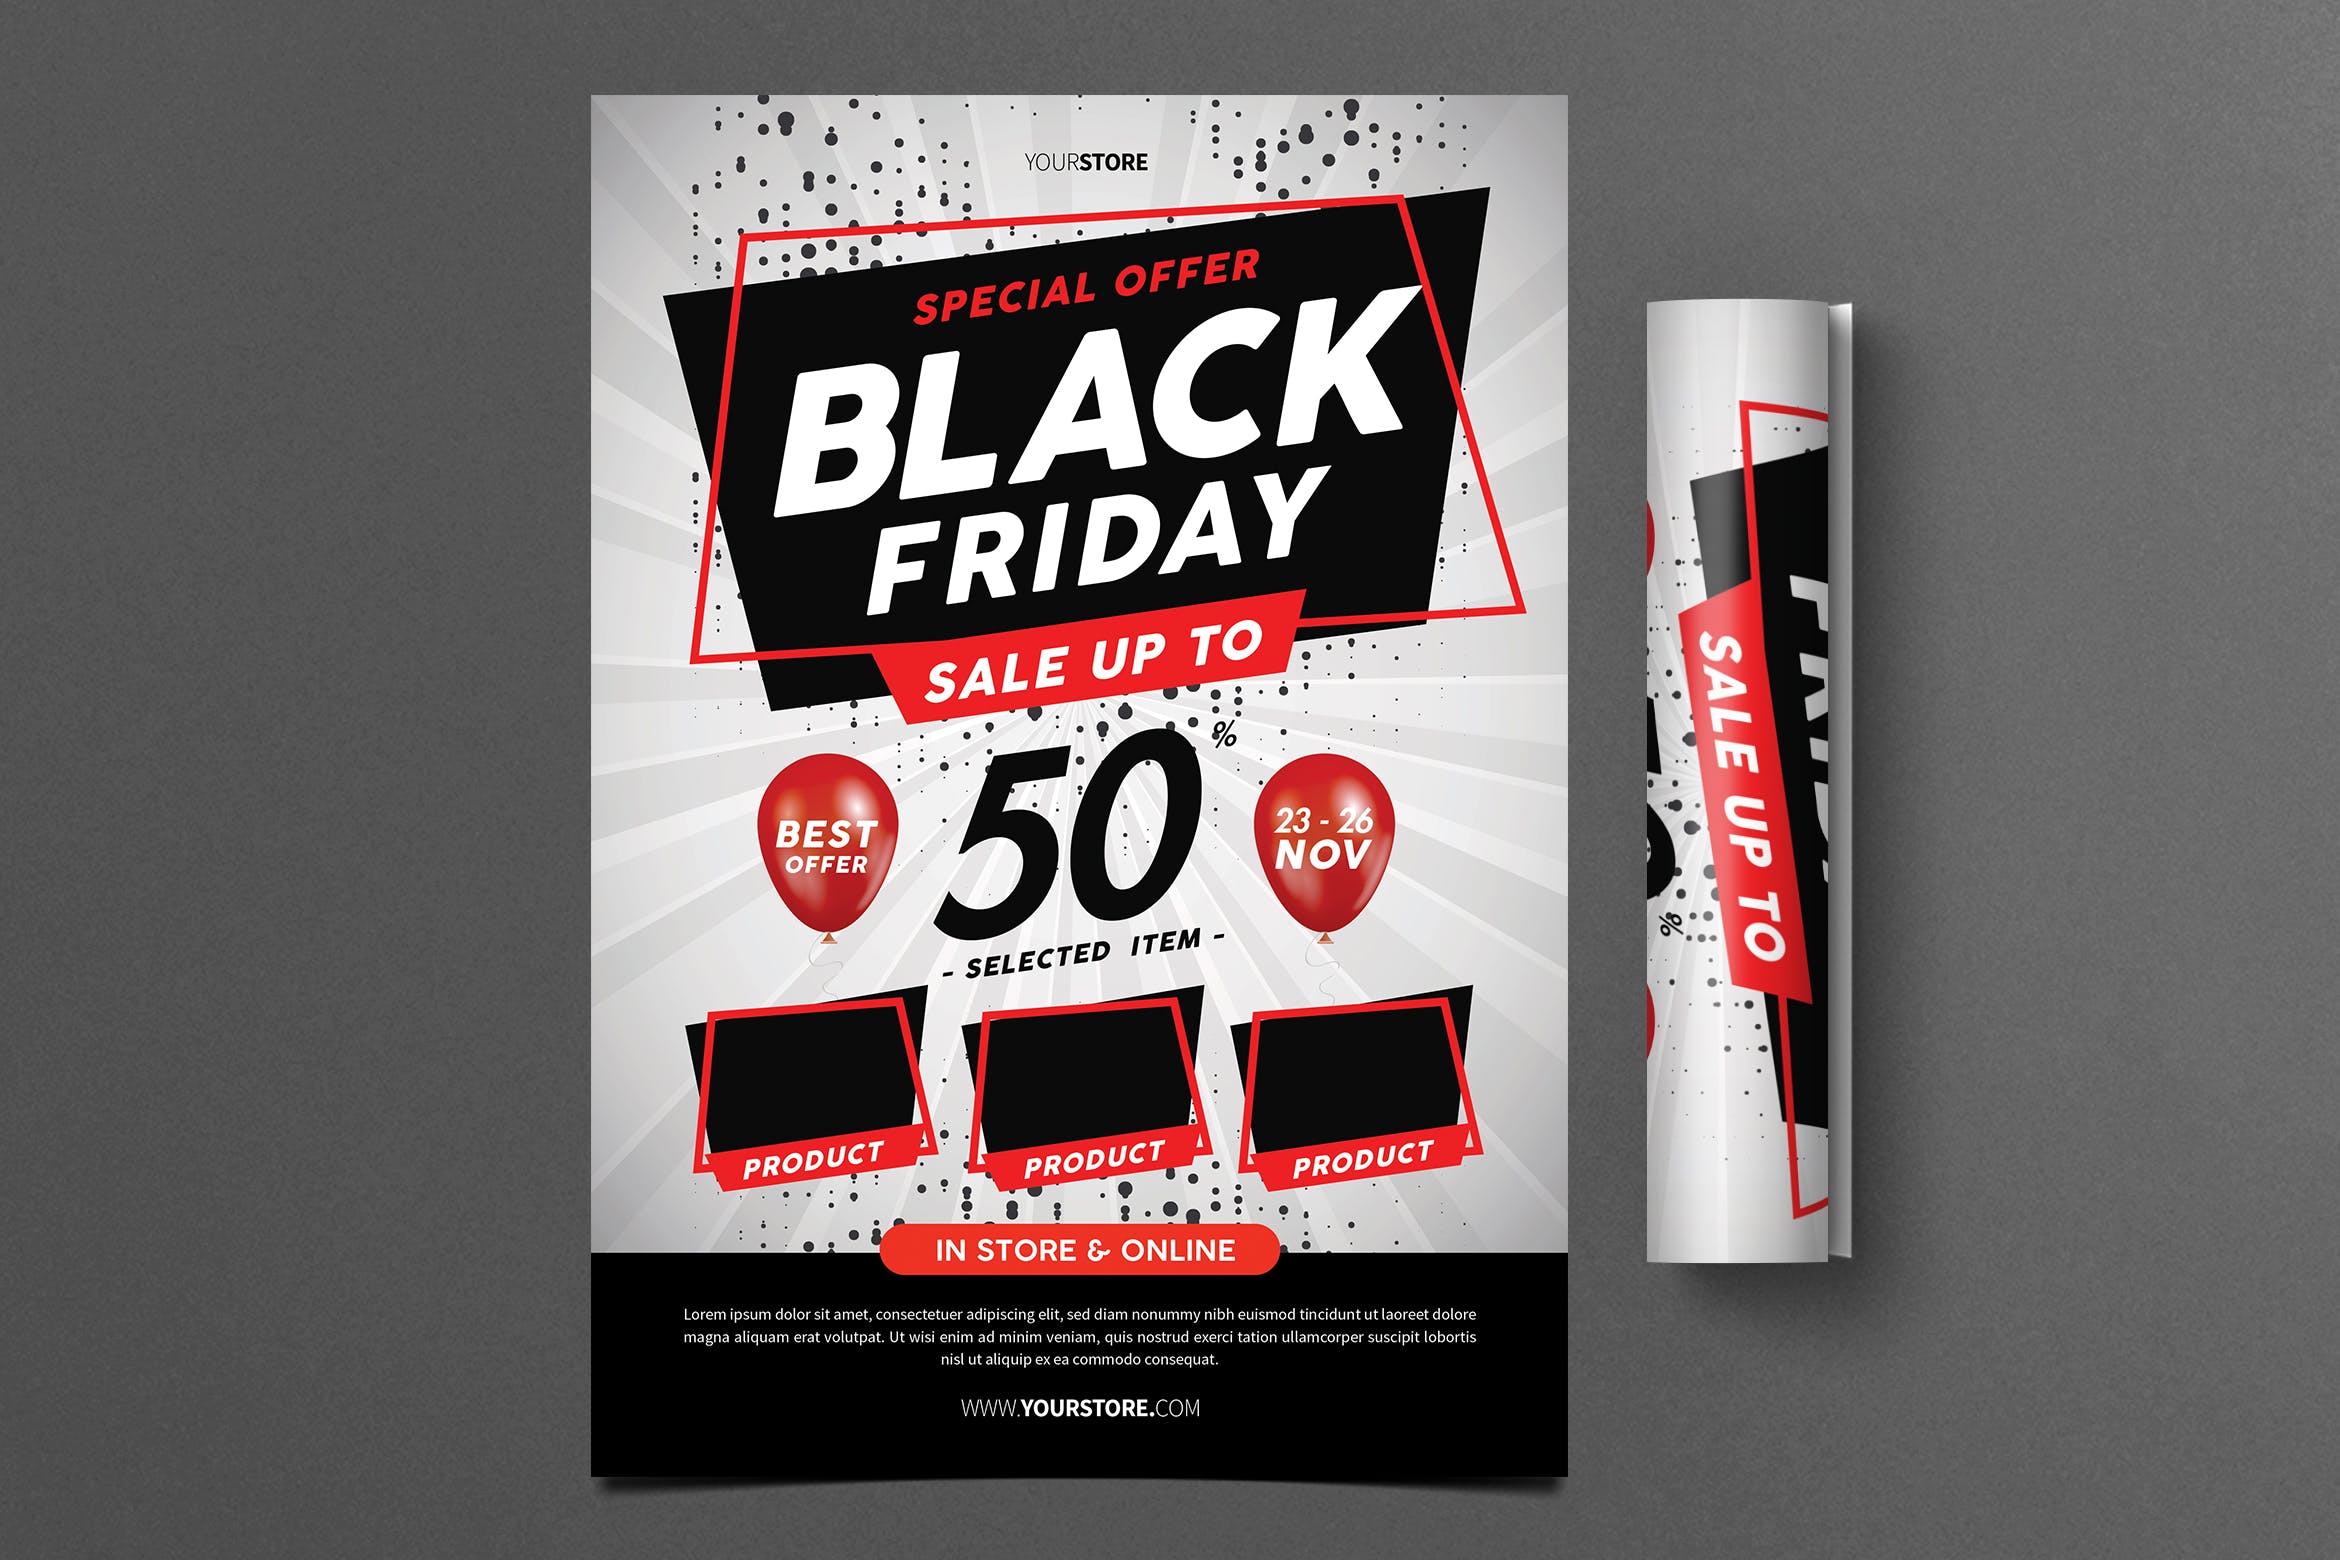 黑色星期五特惠商品促销广告海报设计模板 Black Friday Flyer插图